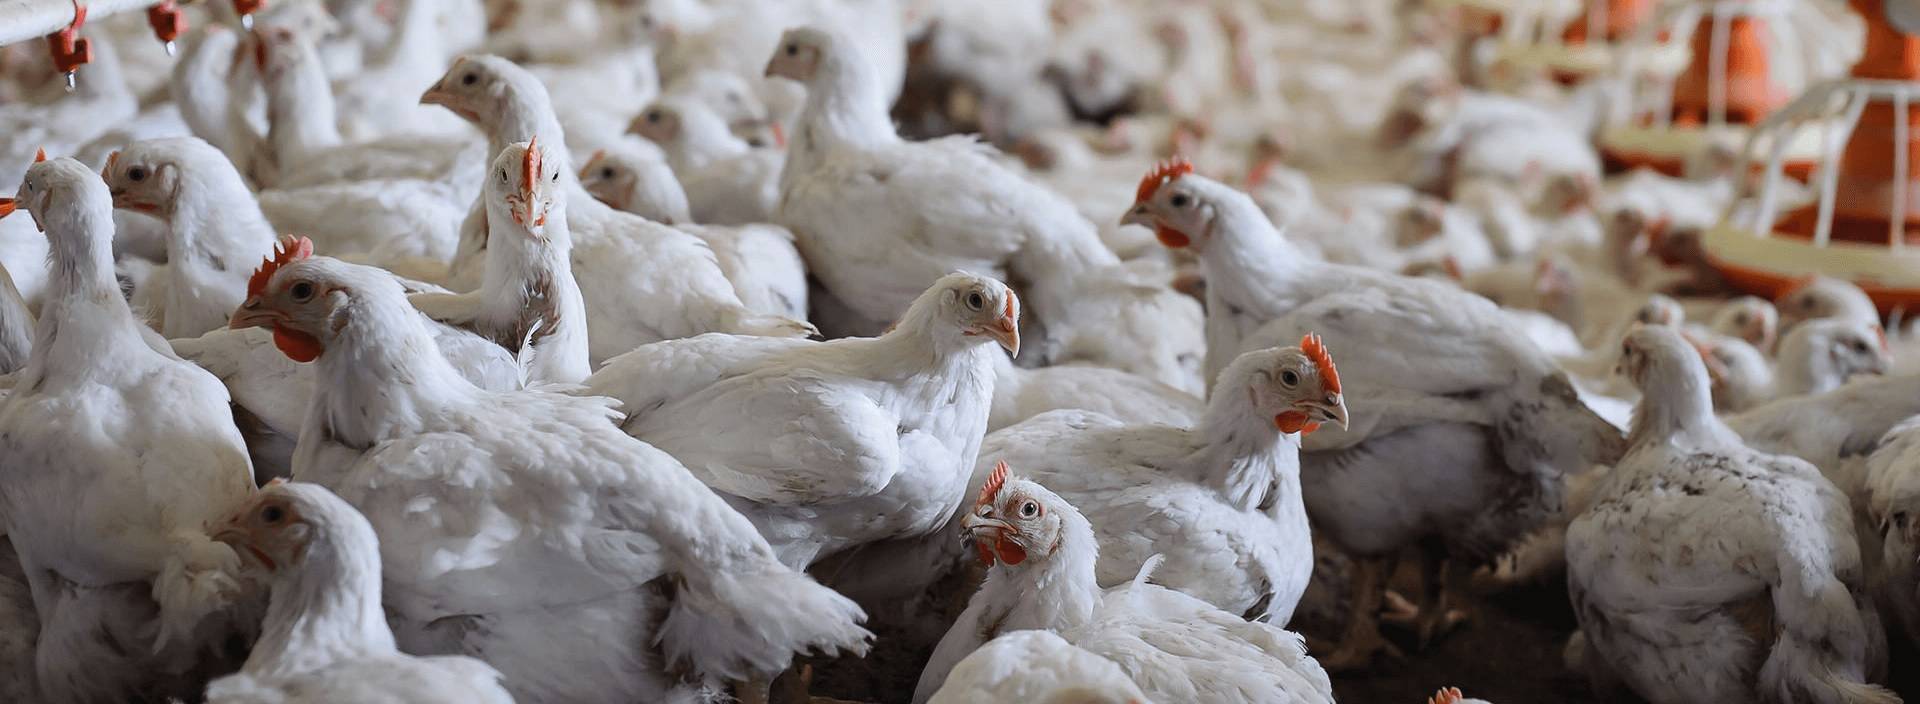 Cодержание и разведение цыплят бройлеров на приусадебном участке и в домашних условиях